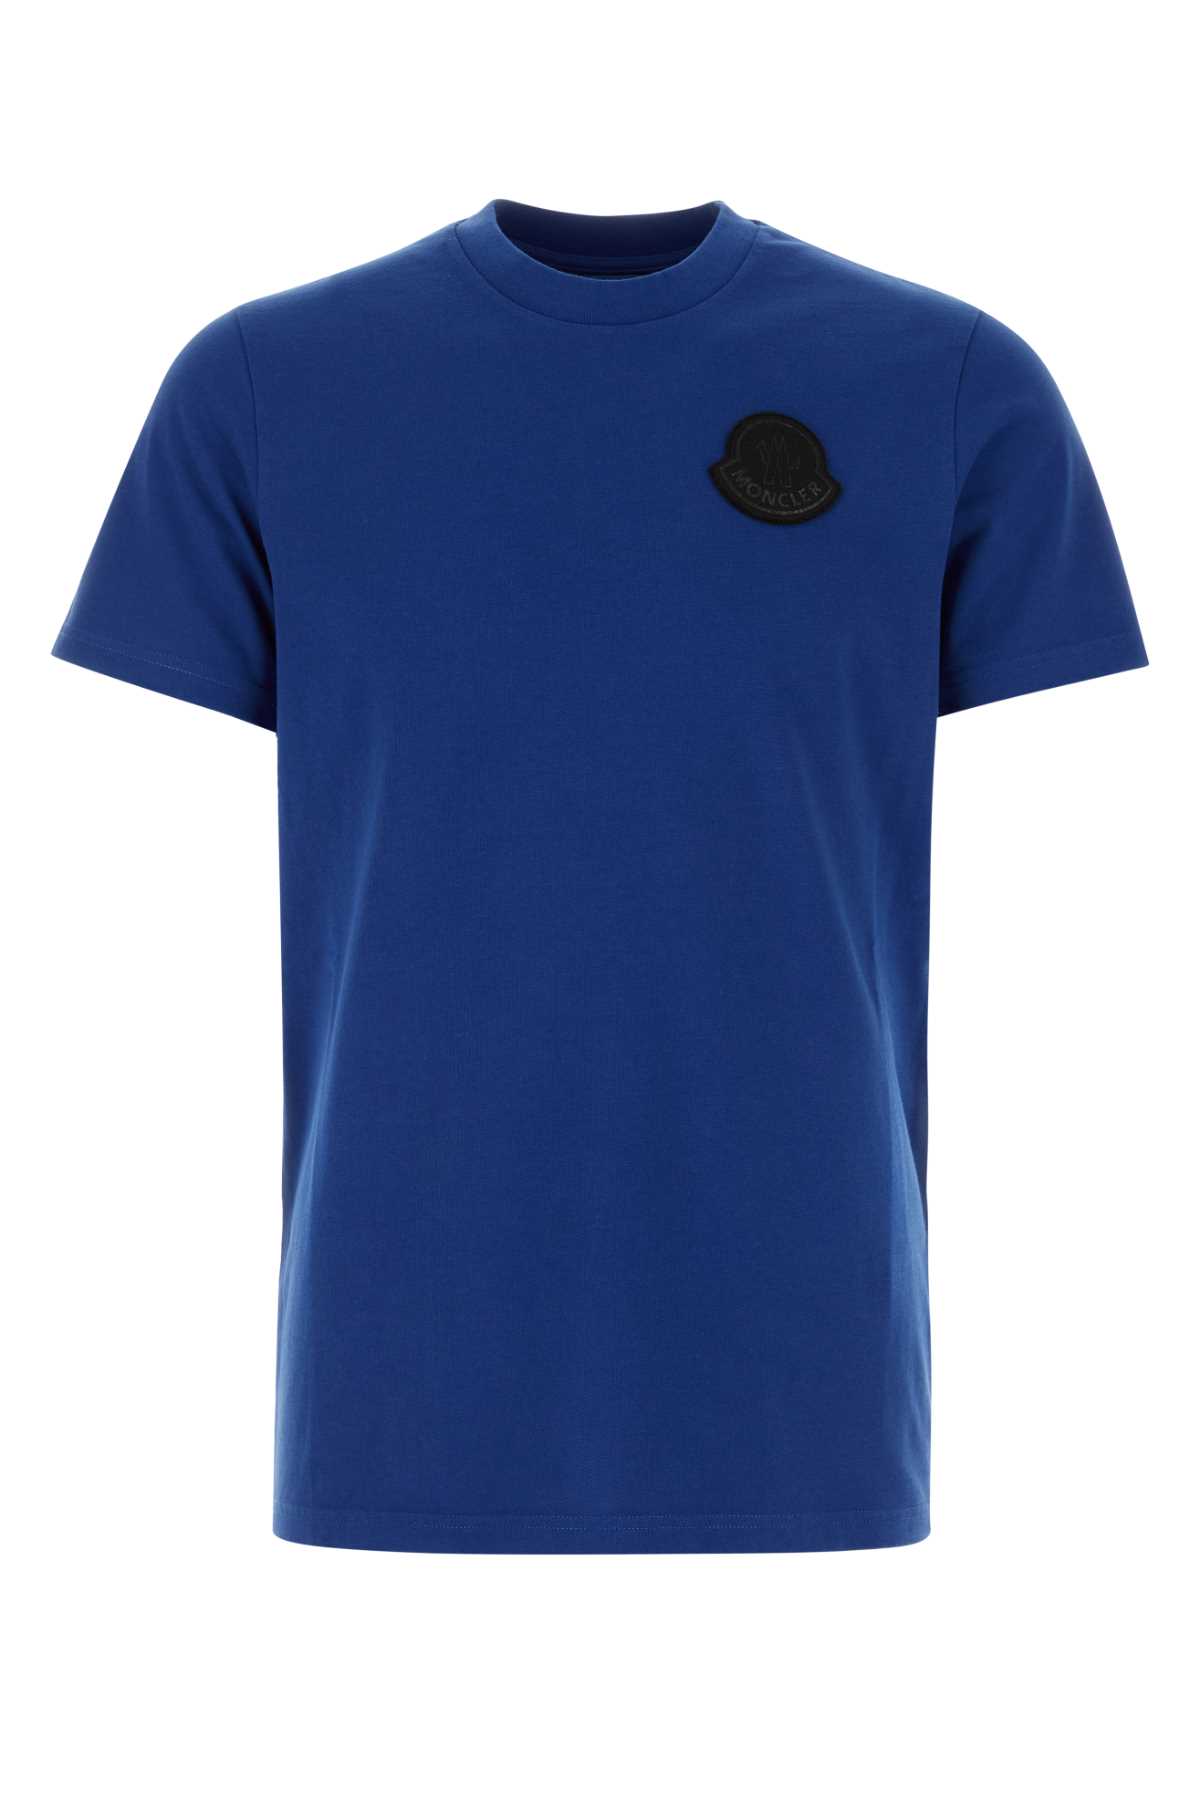 Electric Blue Cotton T-shirt